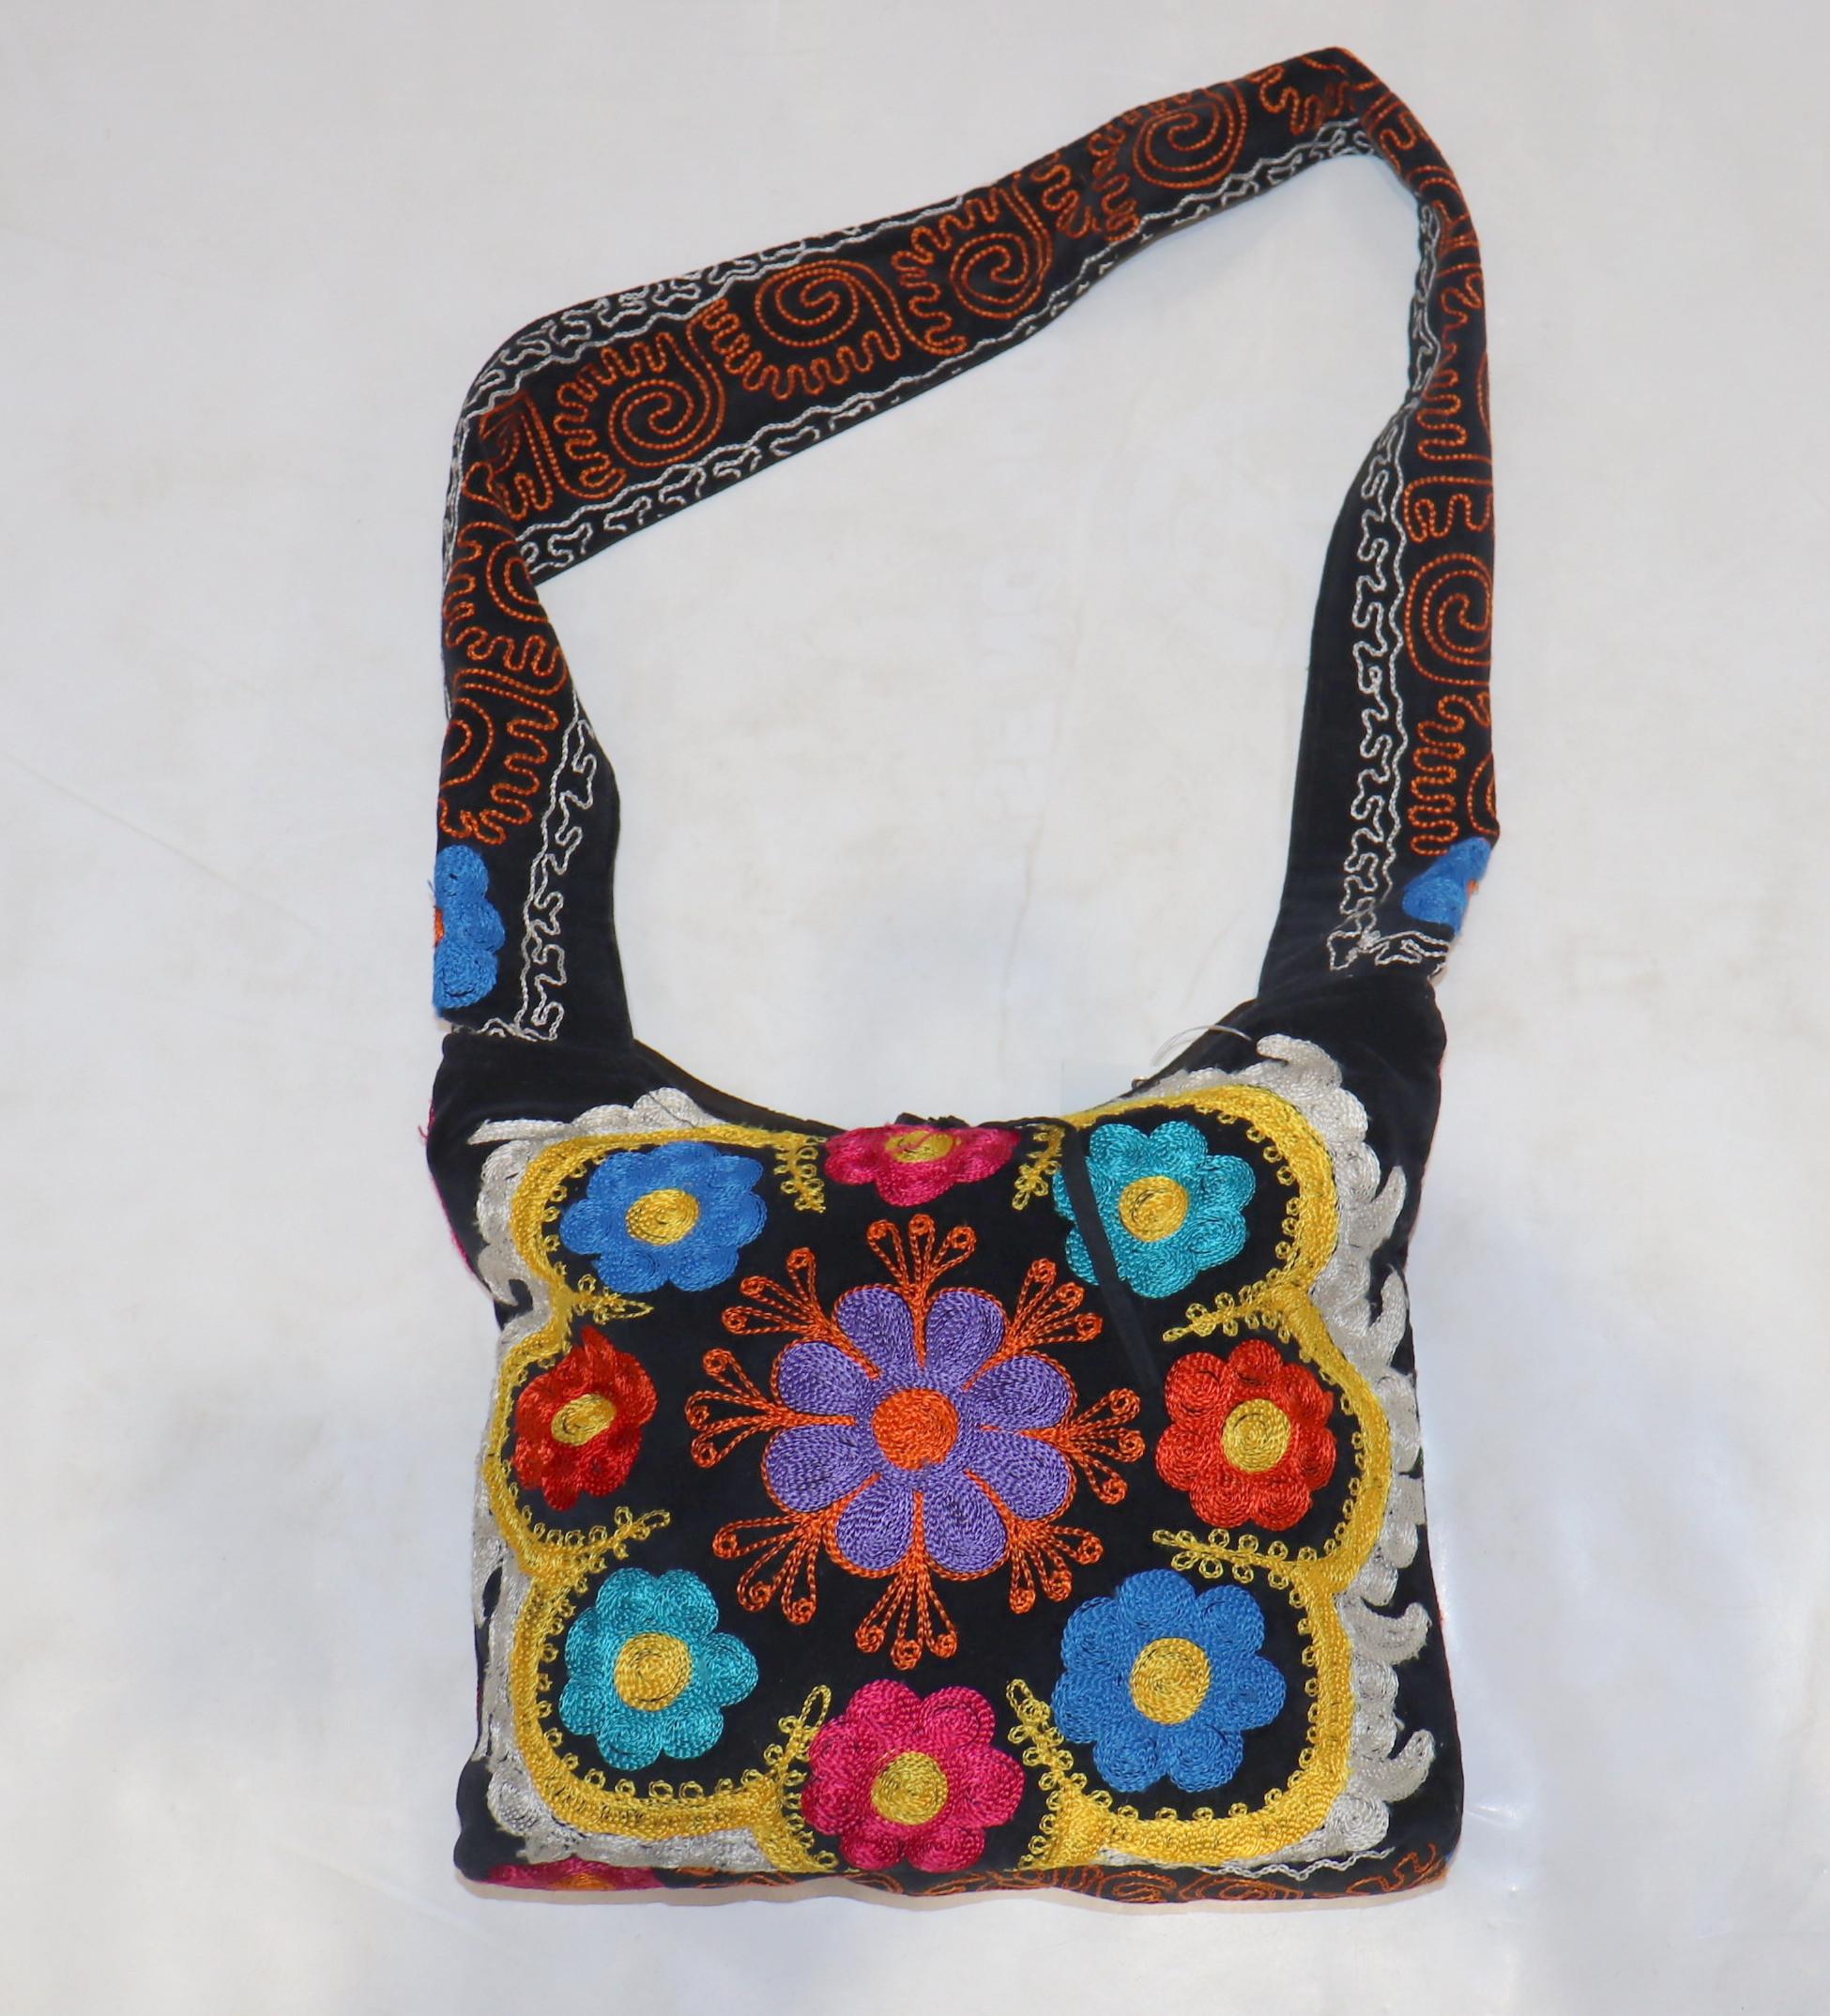 Eine Handtasche, die in kreativer Handarbeit aus einer alten Suzanni-Stickerei gefertigt wurde

Maße: 13'' Zoll lang.